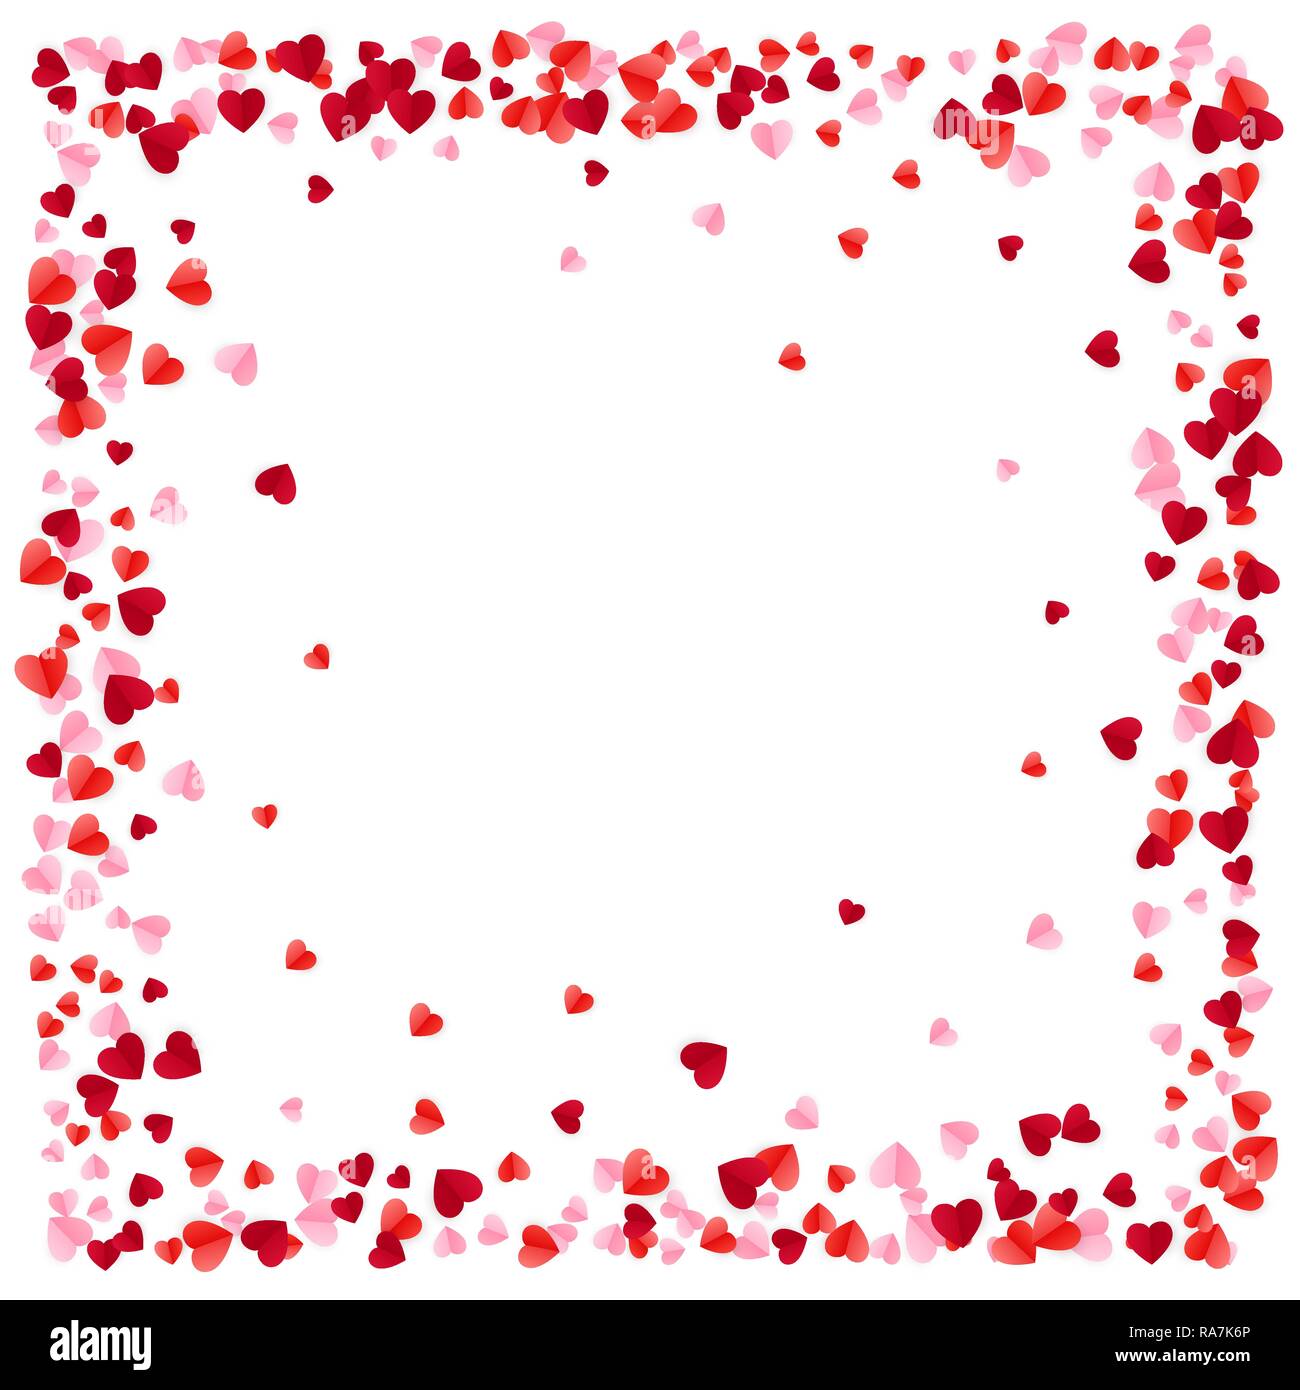 Rotes Papier Herzen Rahmen Hintergrund. Herz Rahmen mit Platz für Text.  Romantische zerstreuten Herzen Textur. Liebe. Design für den Valentinstag  oder Hochzeiten ein Stock-Vektorgrafik - Alamy